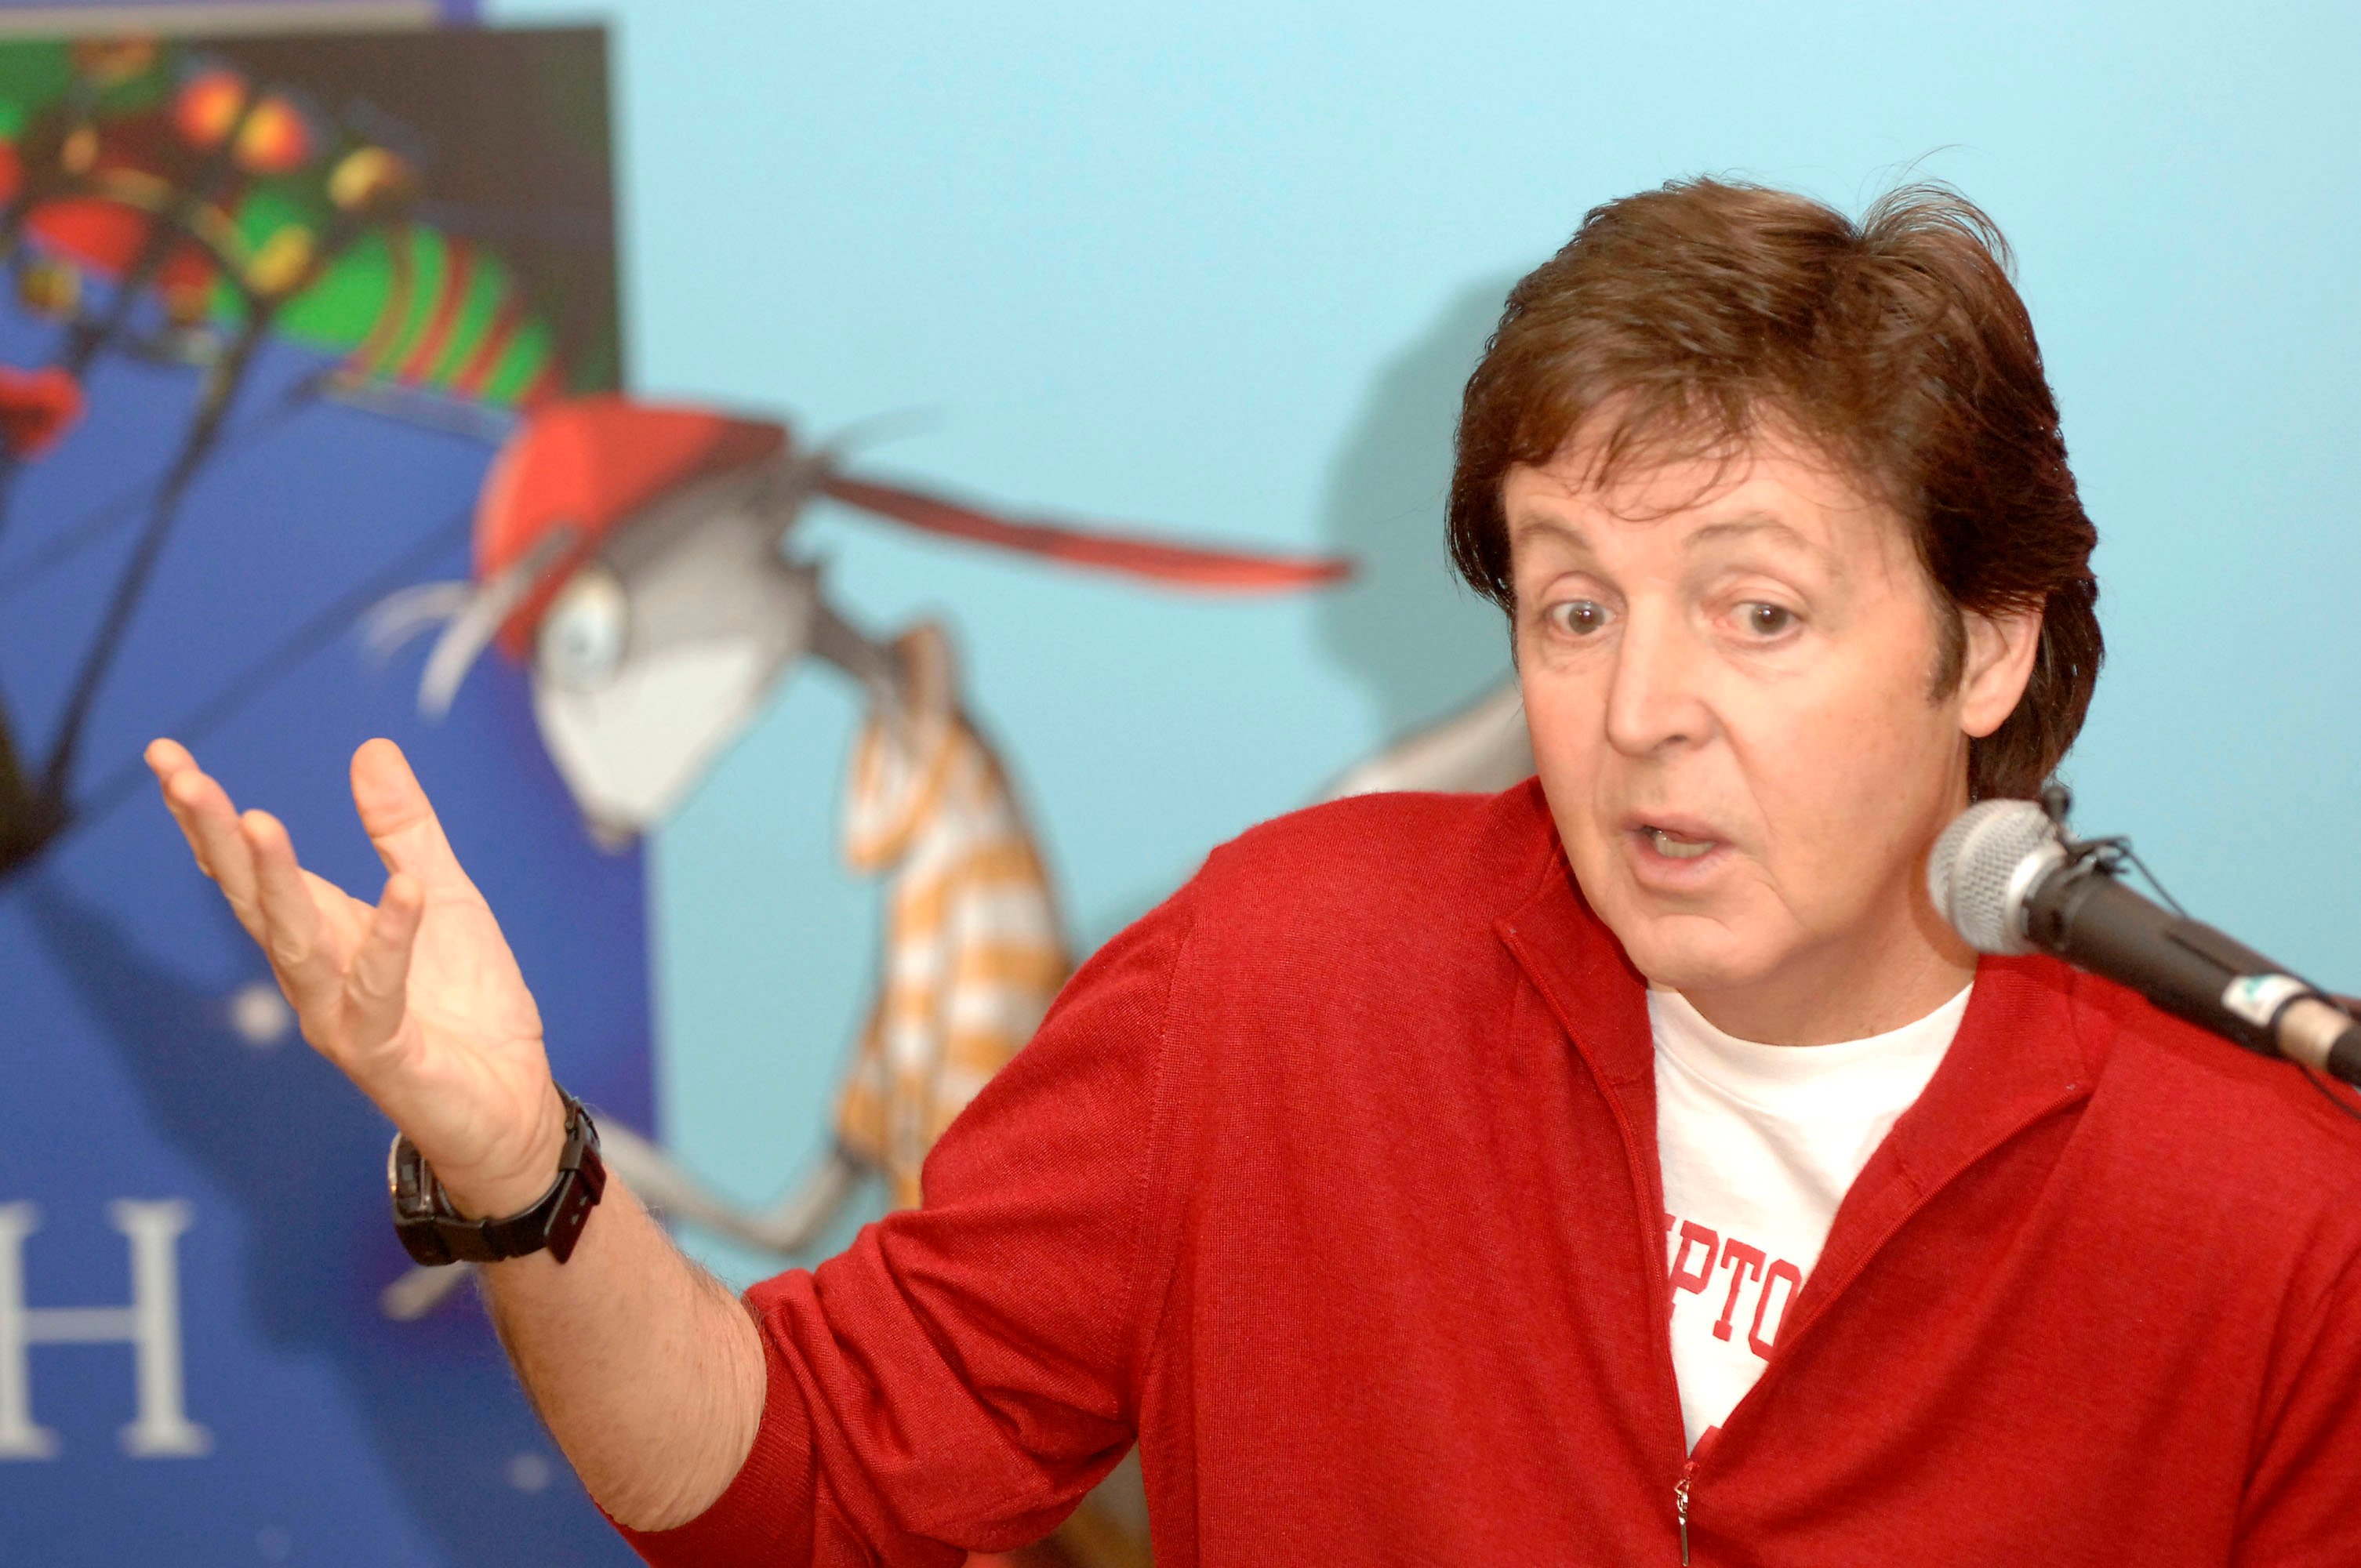 Paul McCartney podzielił się autorem, który sprawił, że zainteresował się literaturą